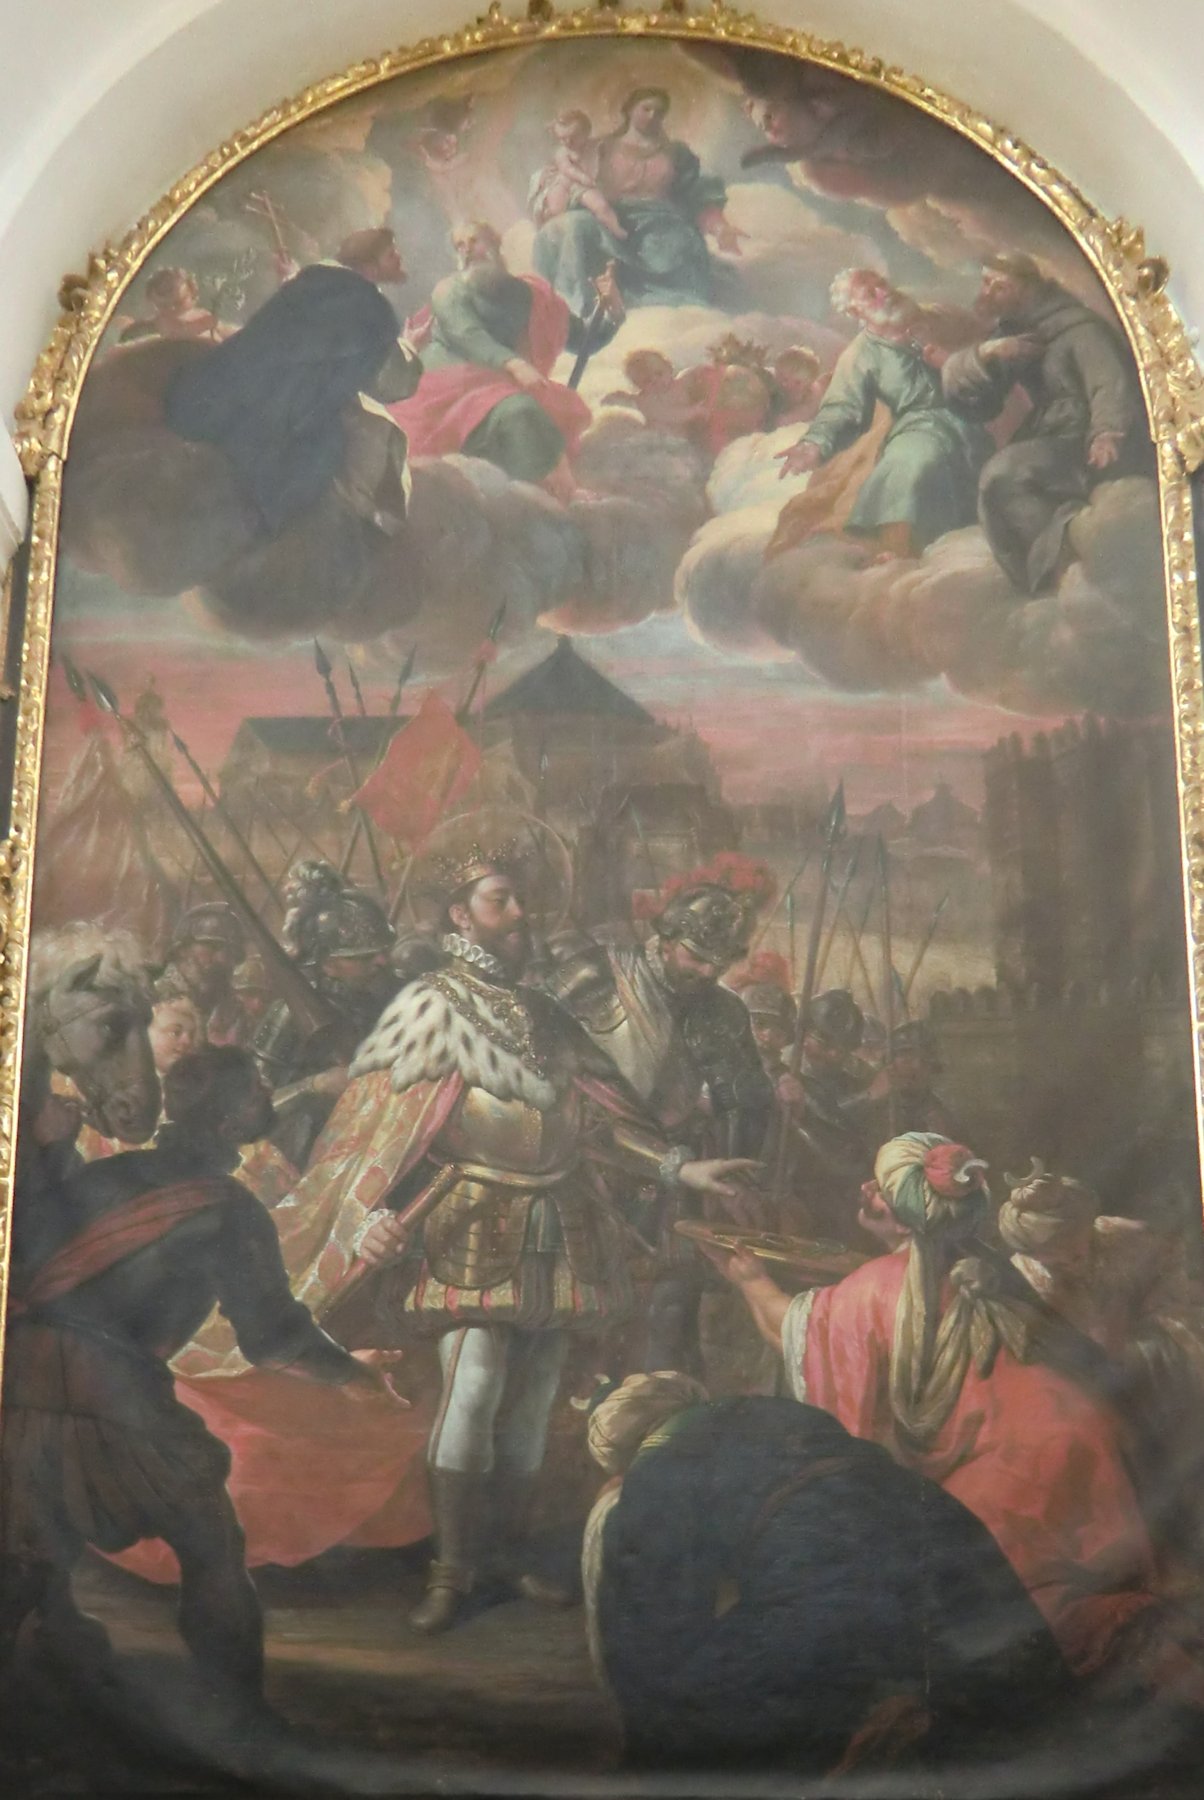 Antonio Palomino de Castro y Velasco: König Ferdinand bekommt 1236 von Ibn Hud die Stadt Córdoba übergeben, um 1710, in der Schatzkammer der Kathedrale in Córdoba